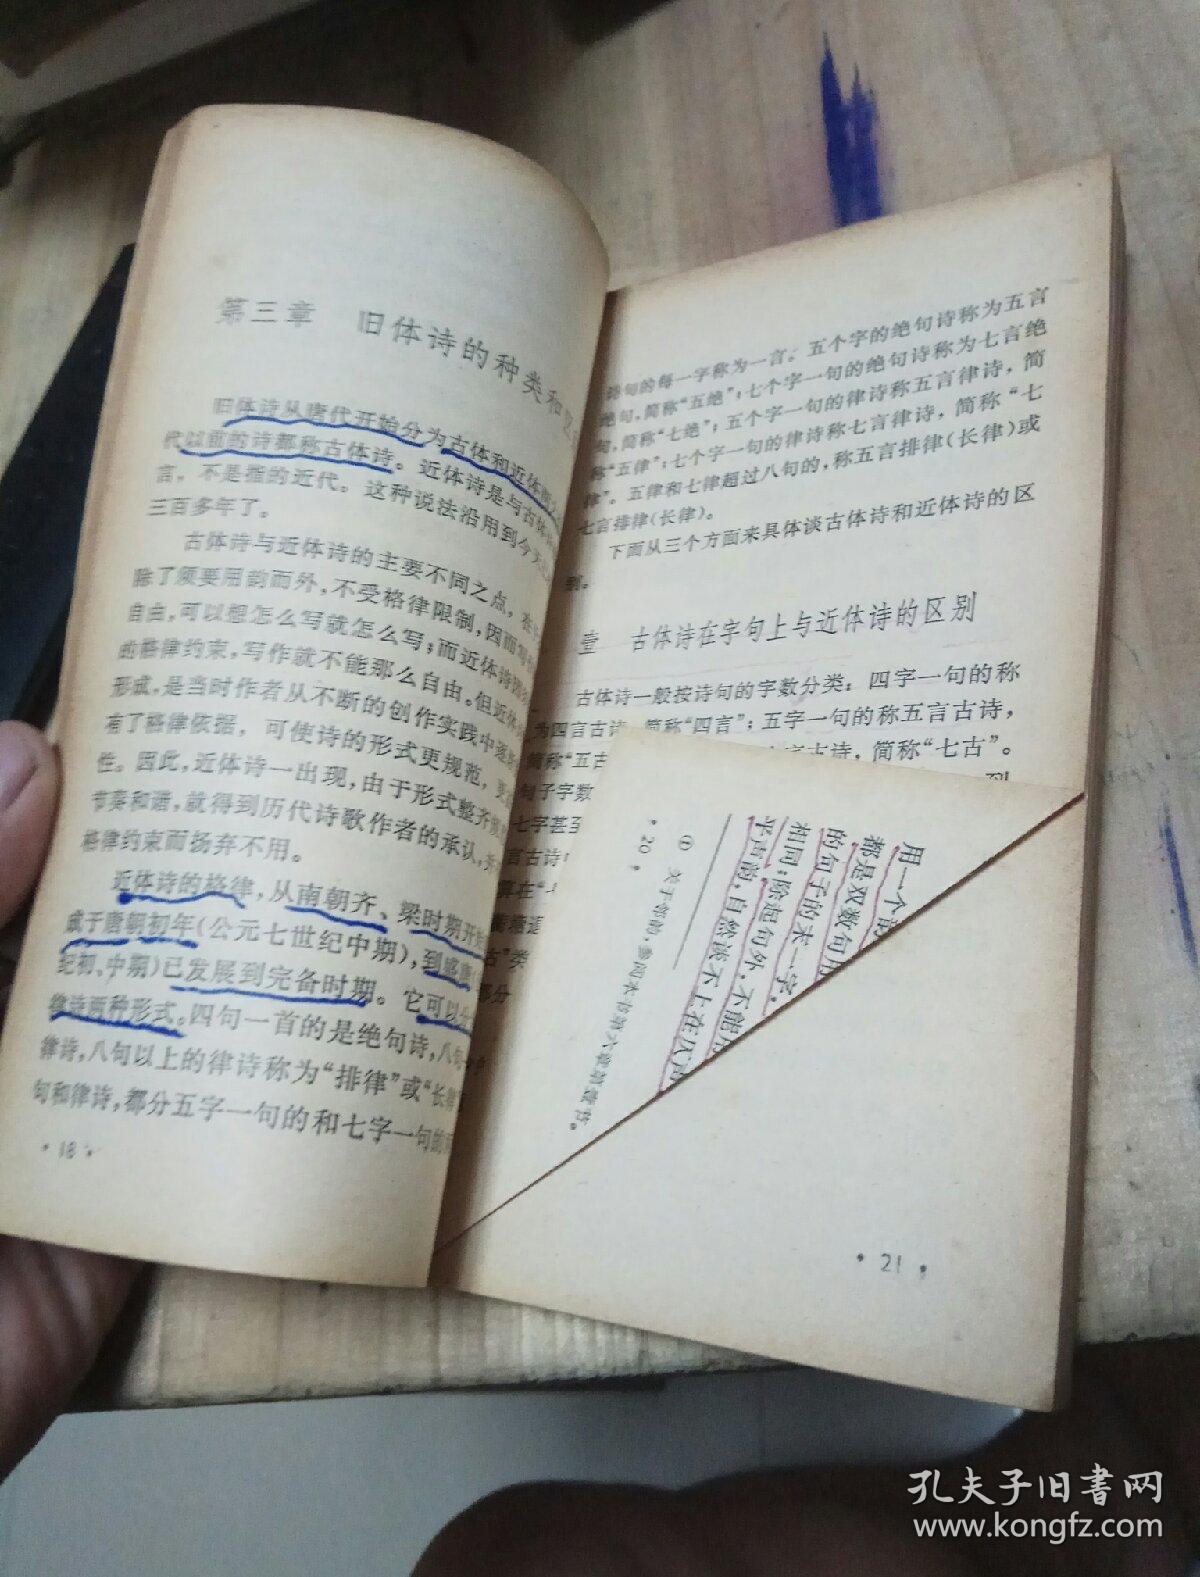 《读诗常识》吴丈蜀著  上海古籍出版社  1981年出版